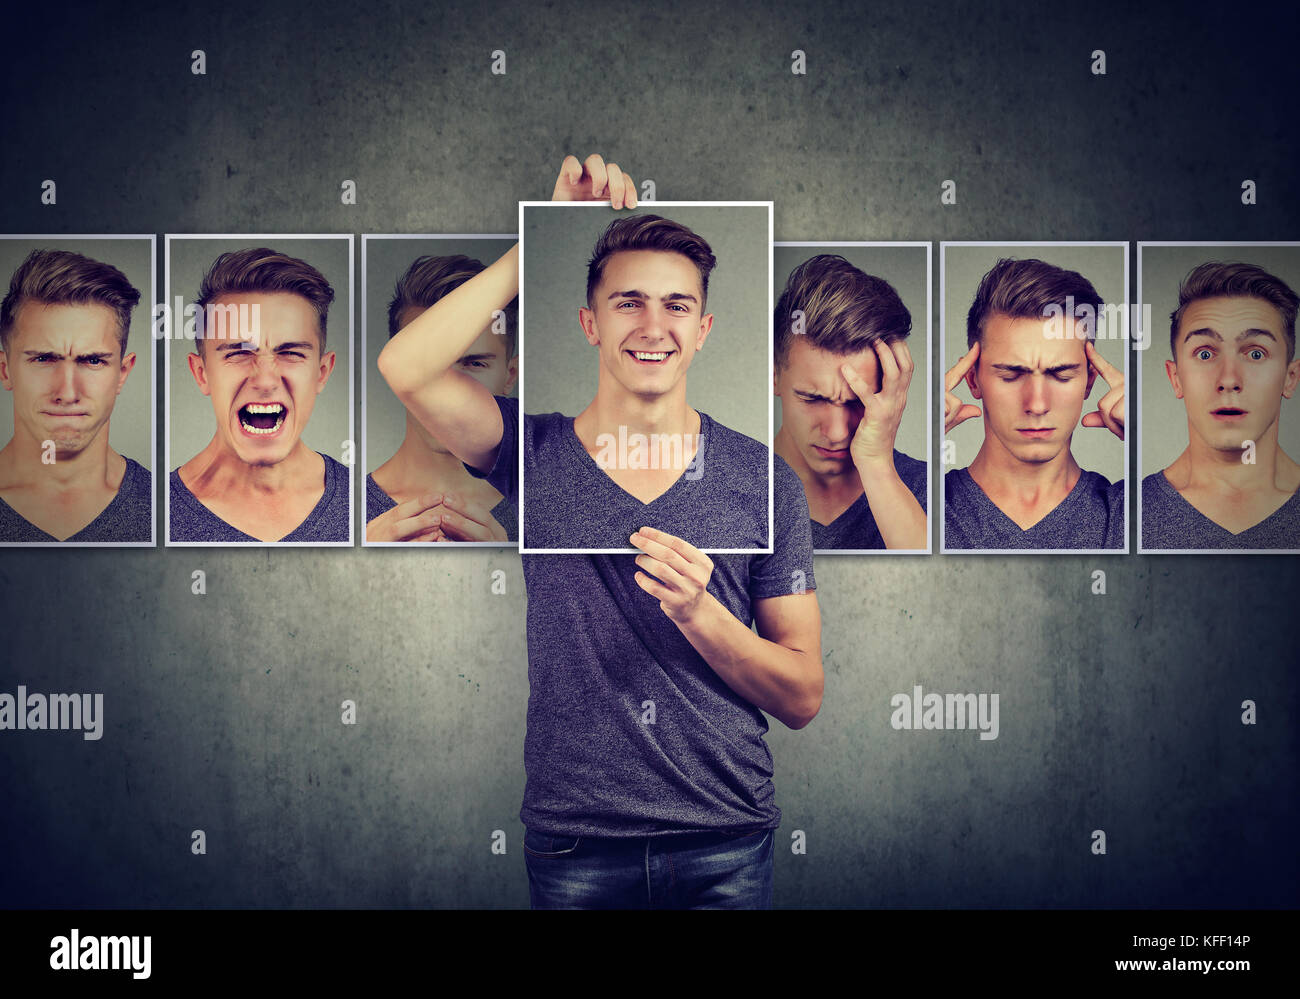 Maskierte junge Mann verschiedene Emotionen ausdrücken Stockfoto